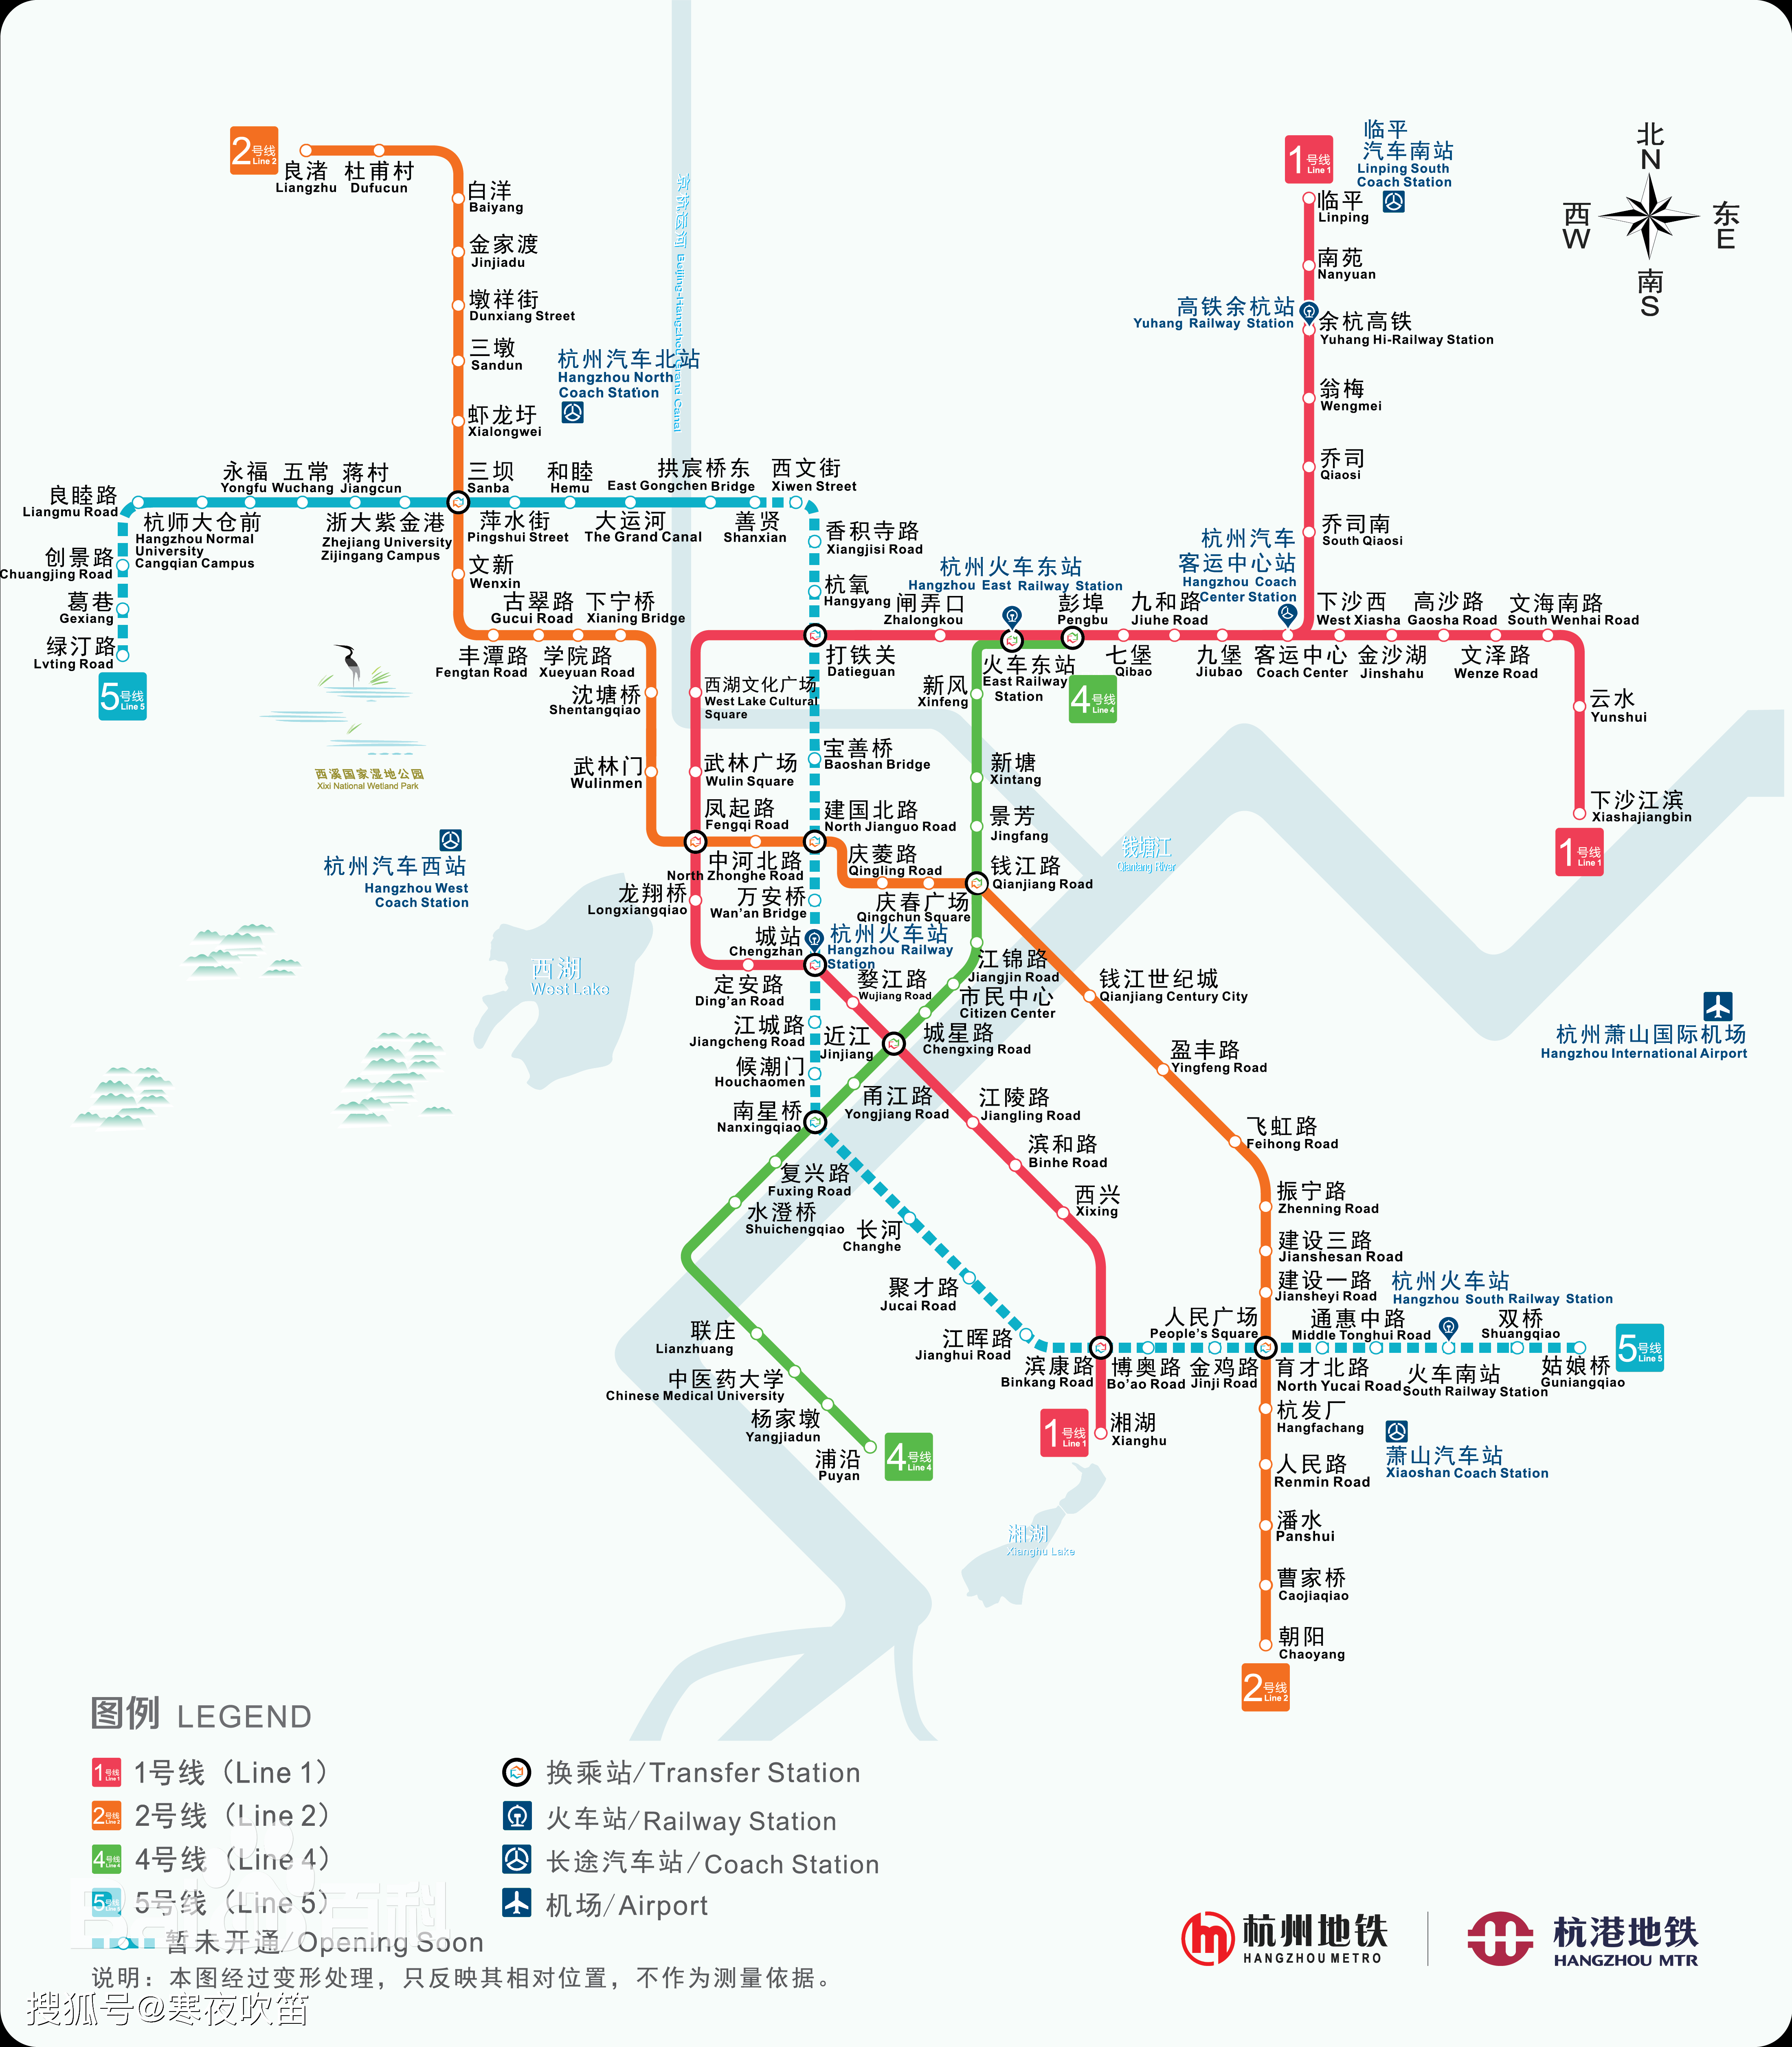 2022年亚运会前,杭州将建成13条轨道交通线路